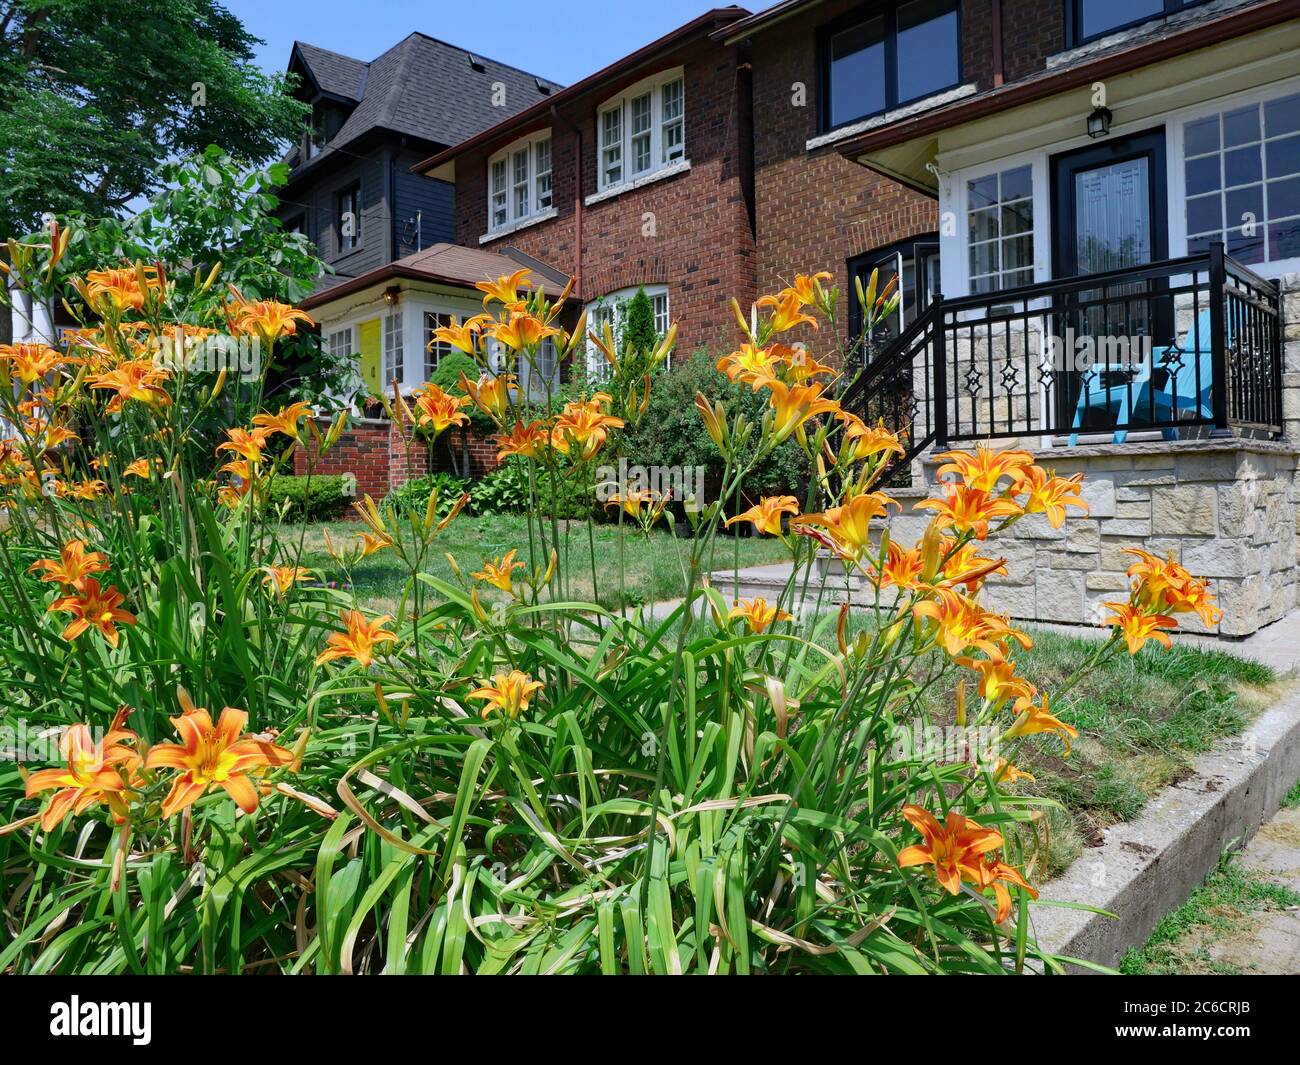 Calle con dos casas de dos pisos y flores coloridas en el patio delantero Foto de stock